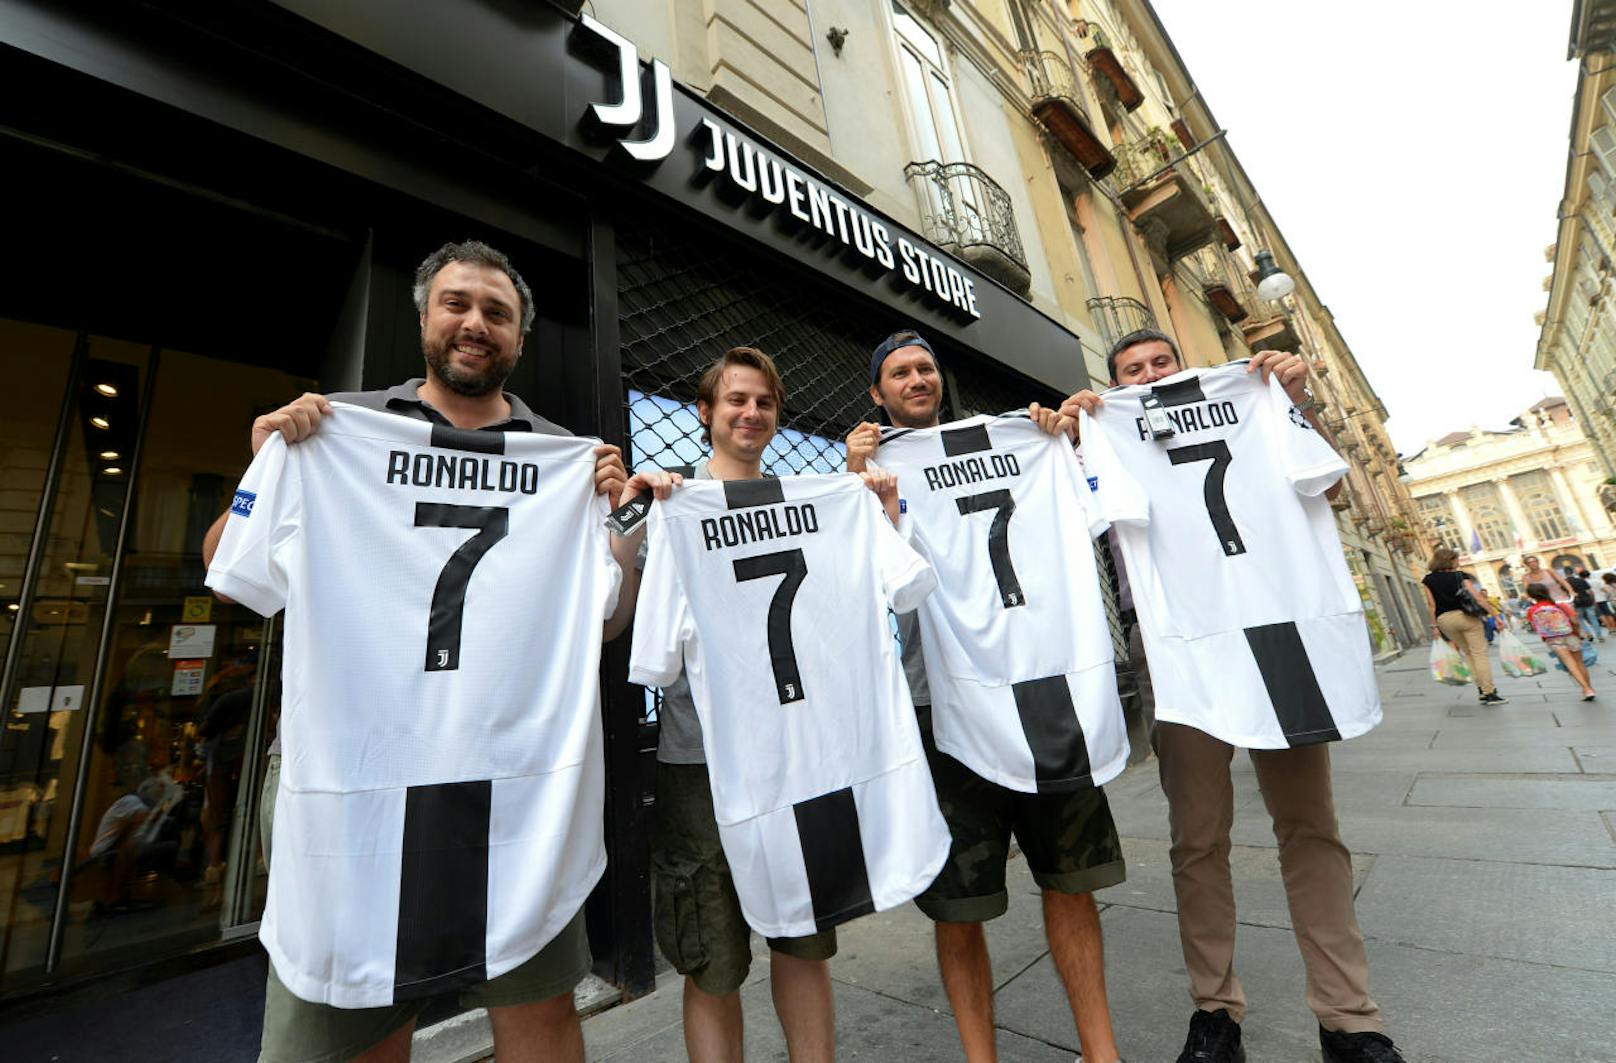 Anfang Juni wurde der Wechsel zu Juventus bekannt. Nach 9 Jahren bei Real Madrid, in denen der Portugiese alles gewann, war es Zeit für eine neue Herausforderung.